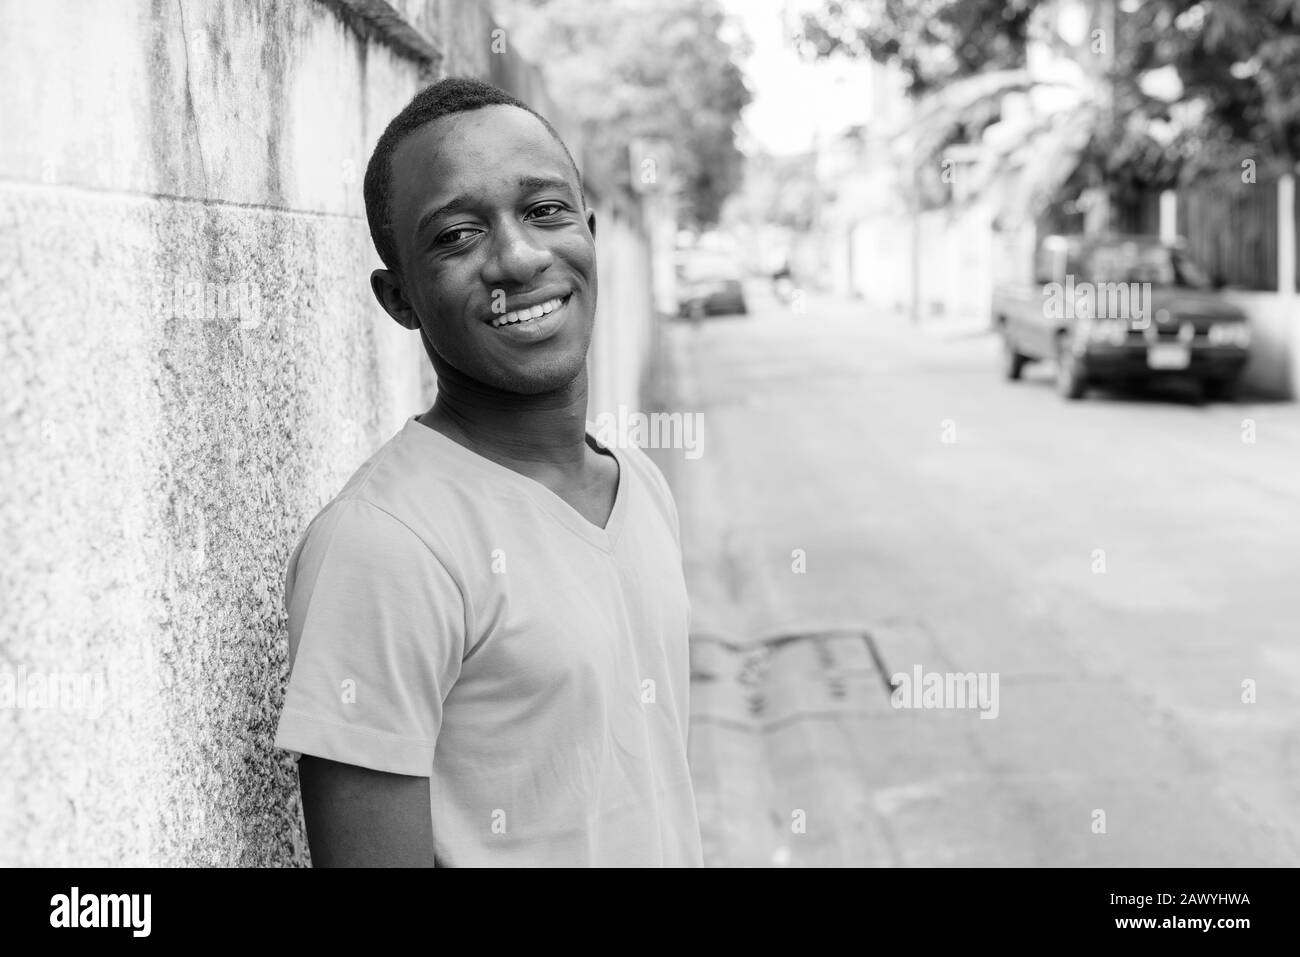 Felice giovane africano sorridente contro vecchie pareti di cemento nelle strade all'aperto Foto Stock